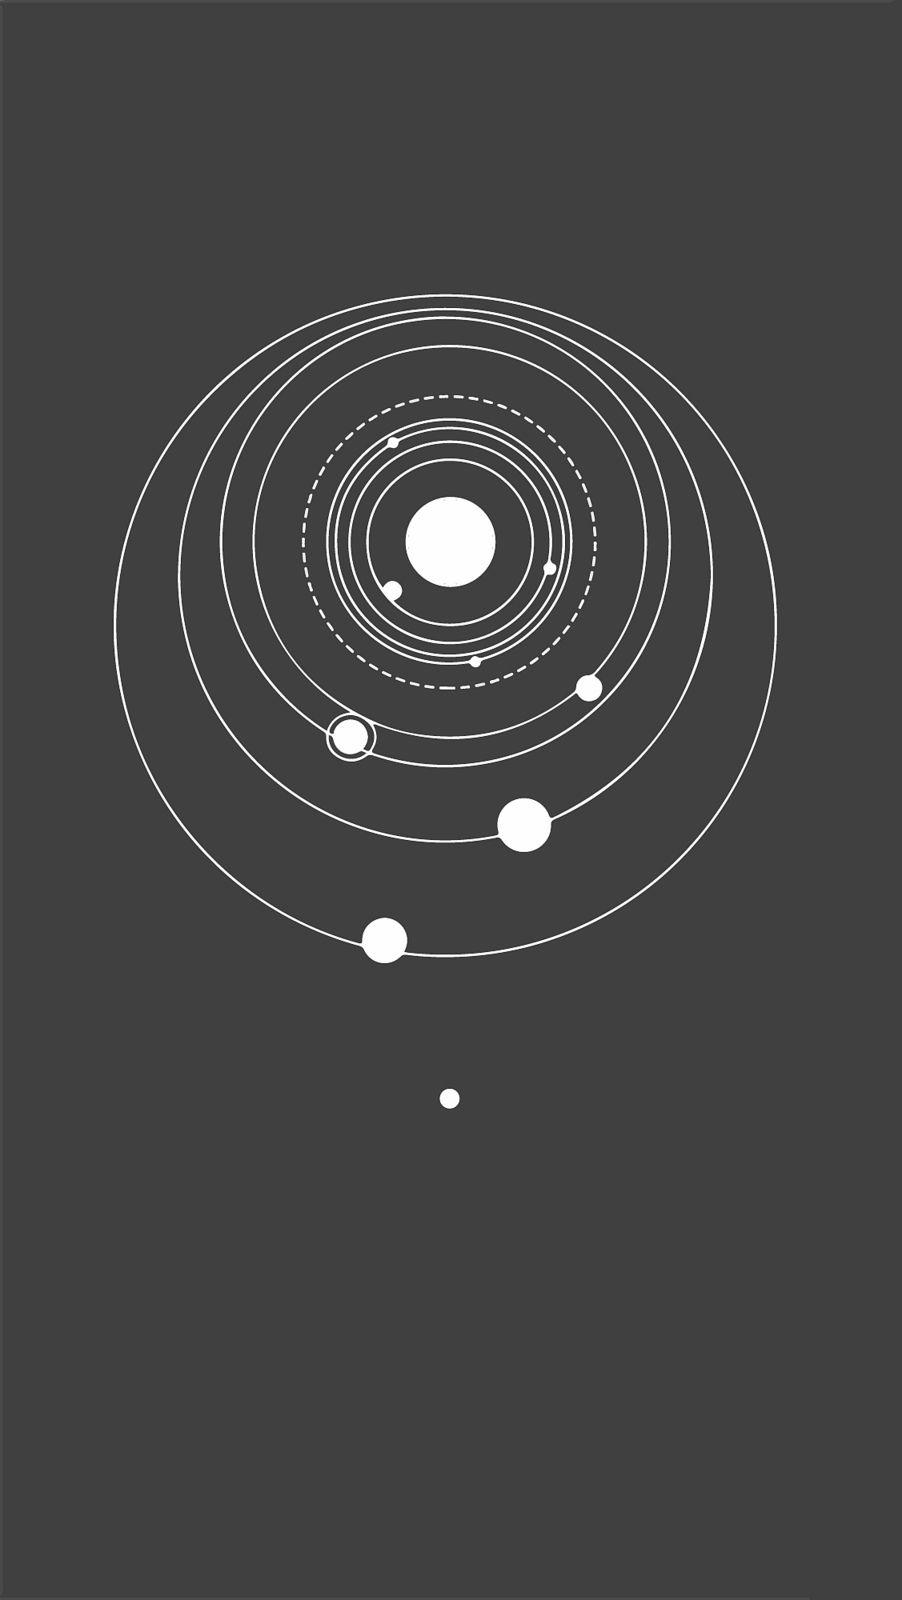 Solar System Wallpaper 2. Solar system wallpaper, System